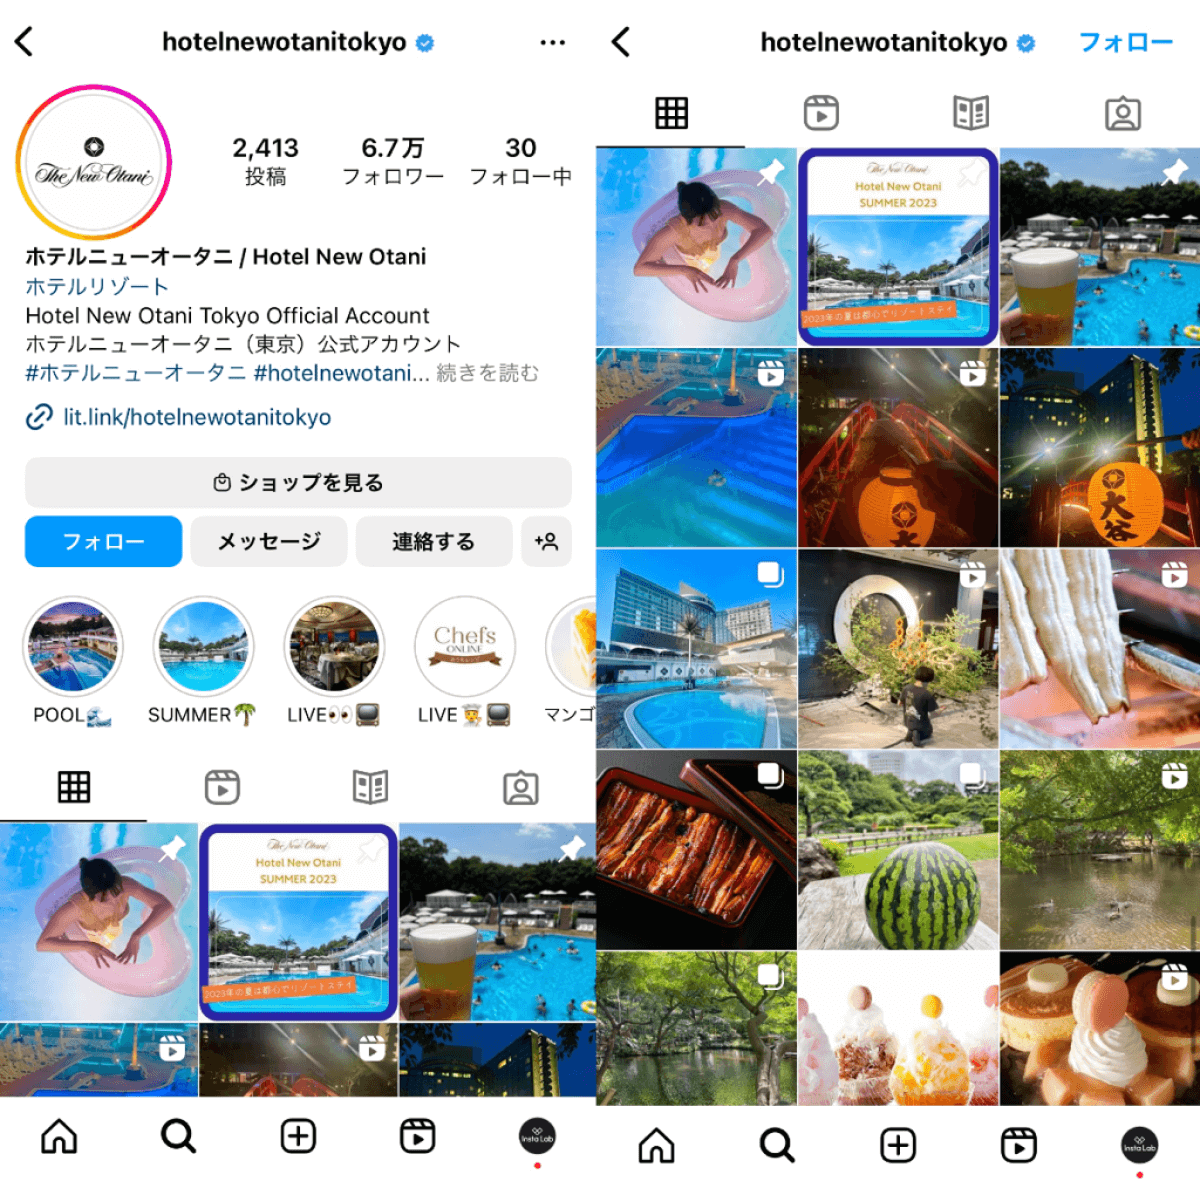 instagram-account-hotelnewotanitokyo